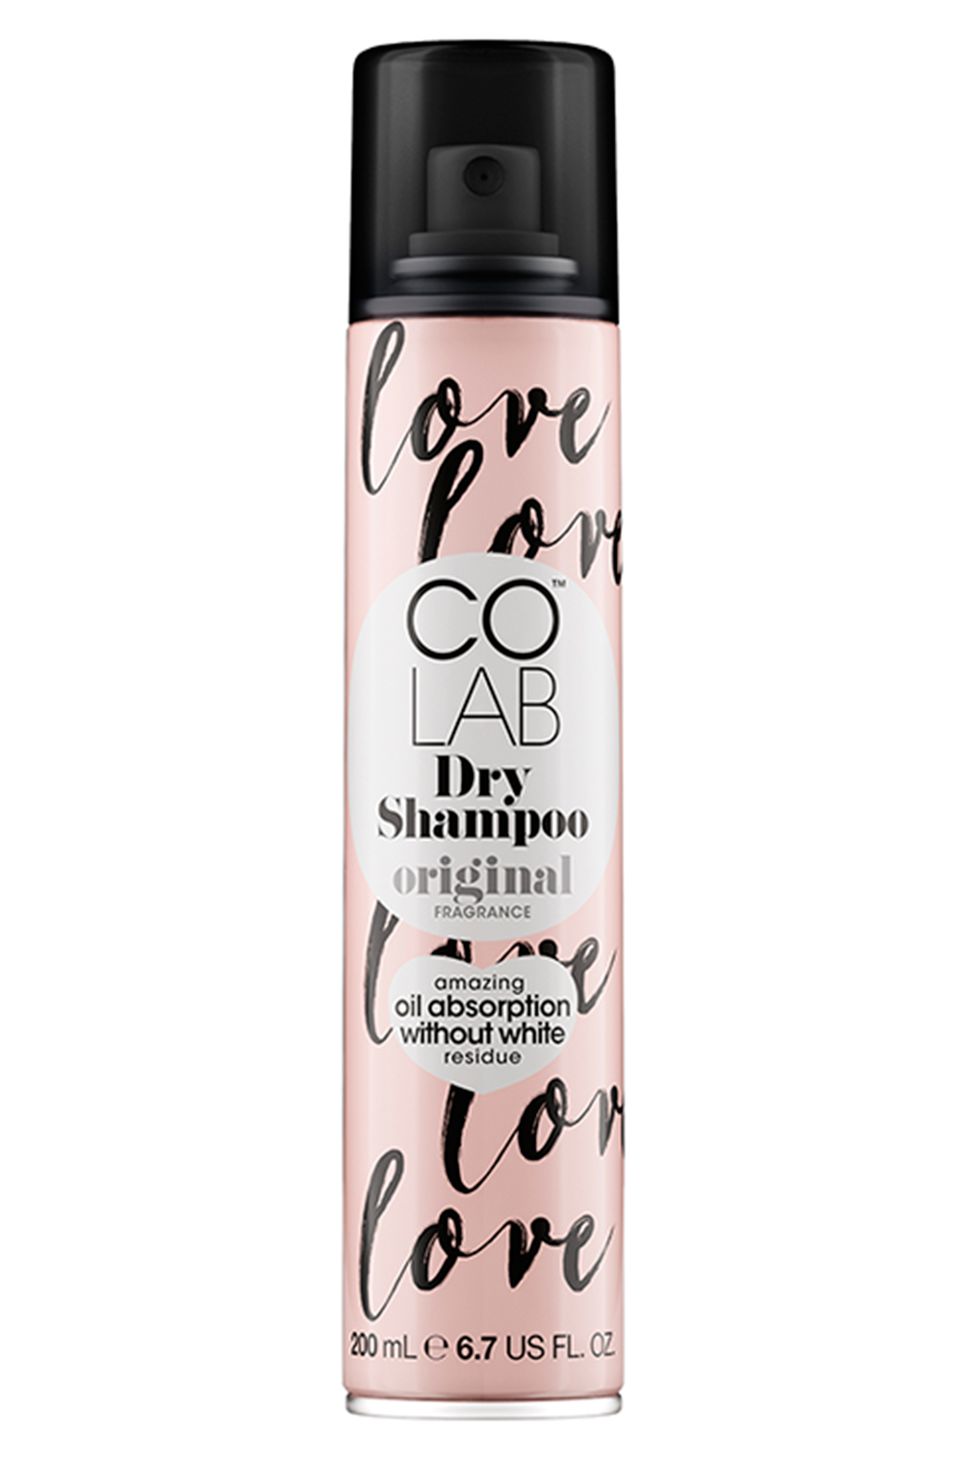 Co Lab Dry Shampoo